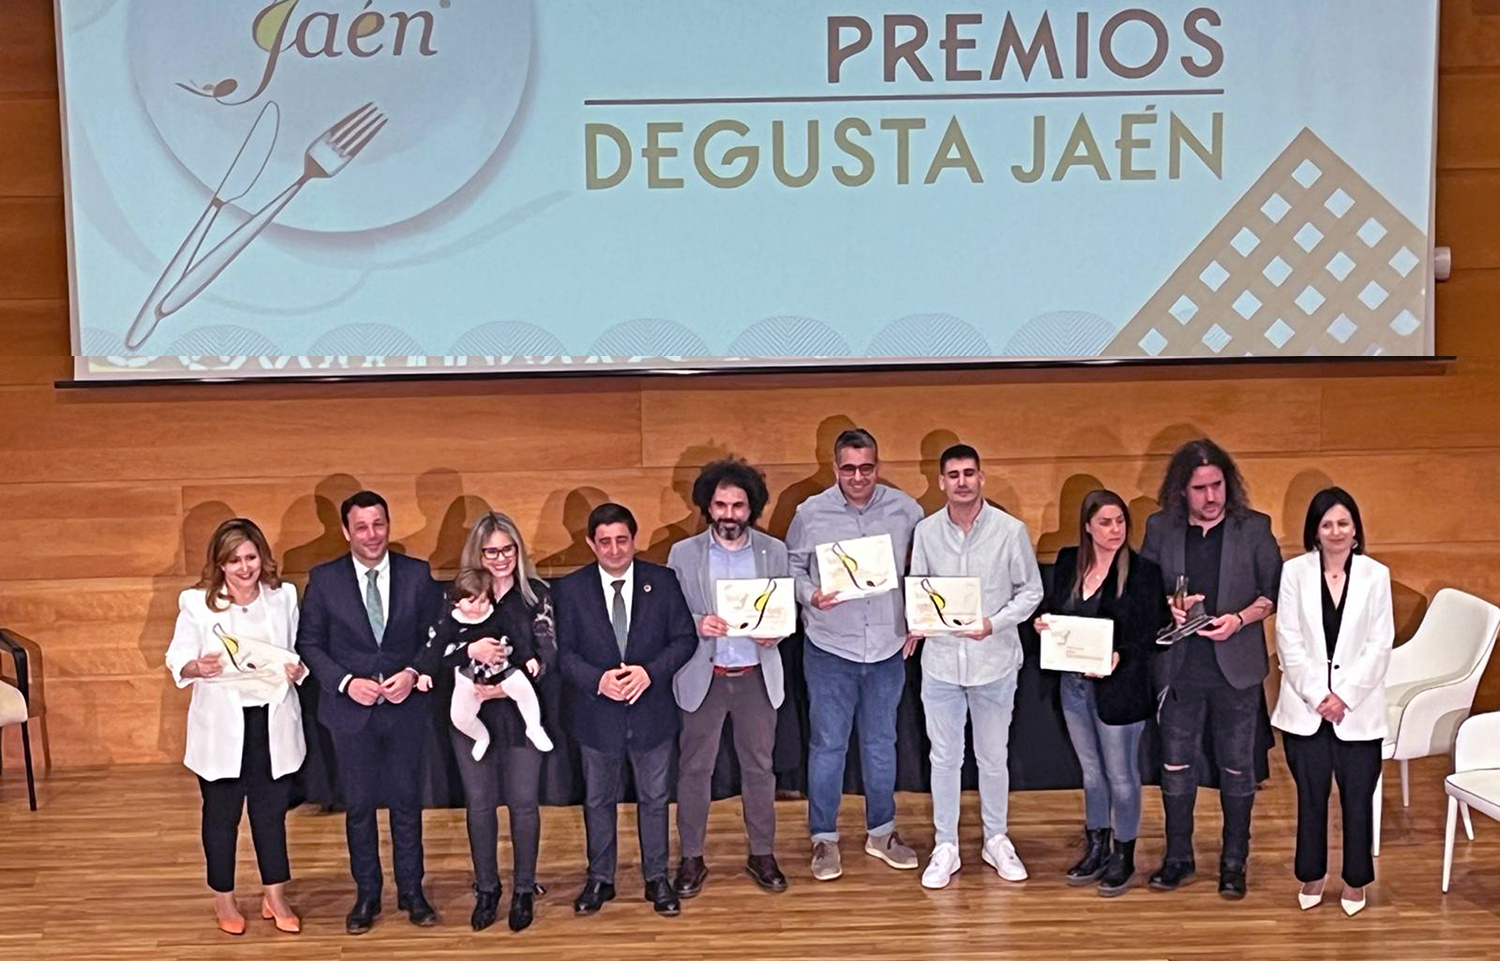 Entregados los premios Degusta Jaén que destacan lo “mucho y bueno” ofertado por el sector agroalimentario de la provincia jienense